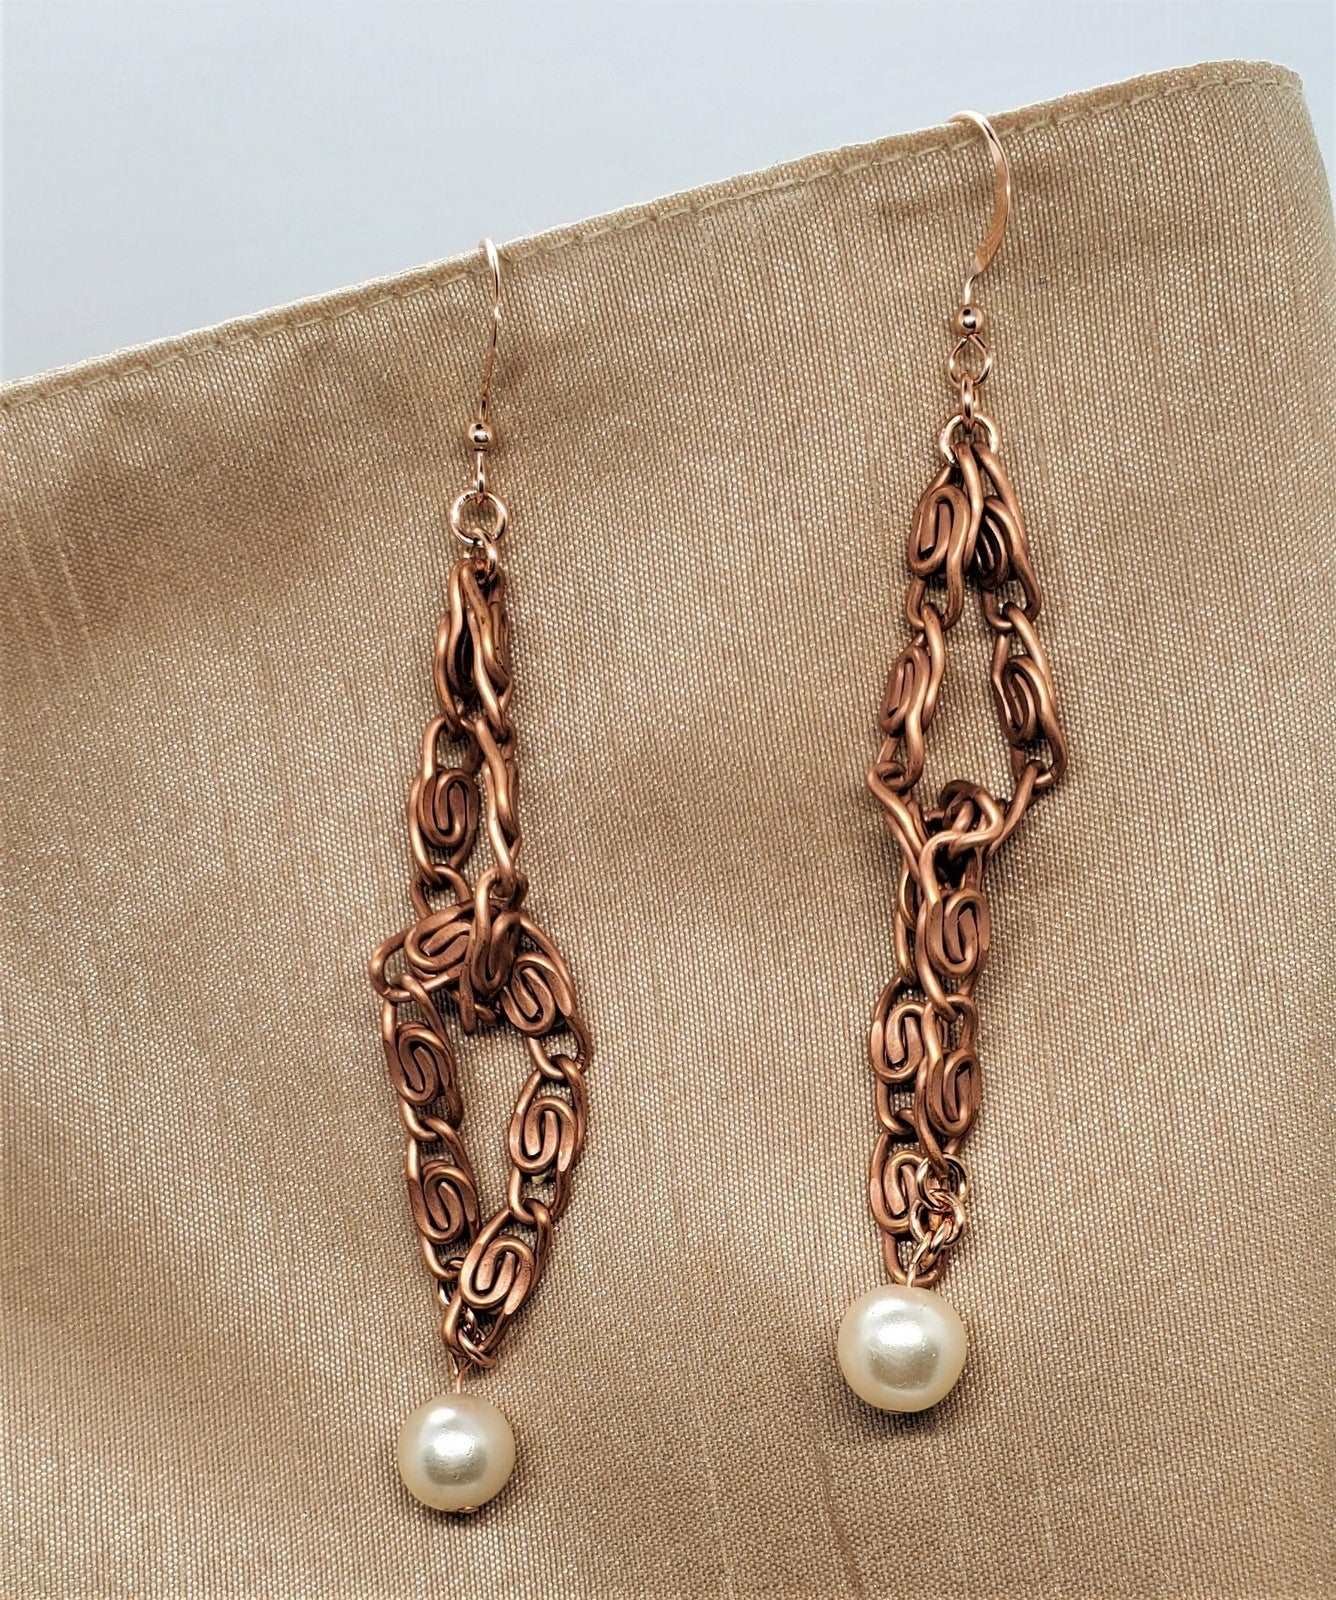 Vintage handmade earrings with pearls, earrings for women, earrings on tan materials, Vintage Rope Earrings